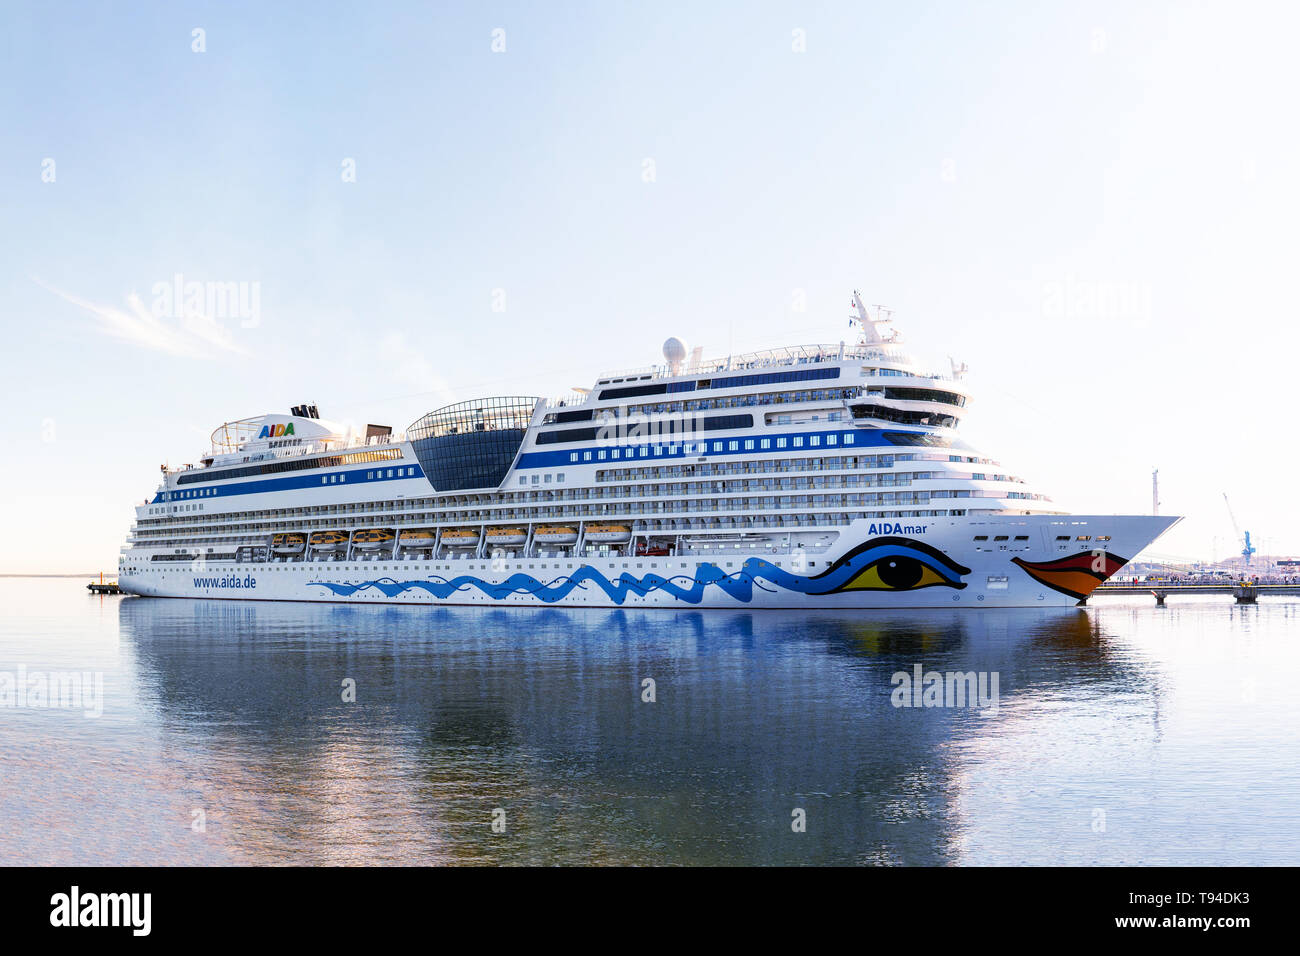 AIDAmar Kreuzfahrtschiff der AIDA Cruises Flotte angedockt in Vanasadam Hafen Tallinn Estland Stockfoto